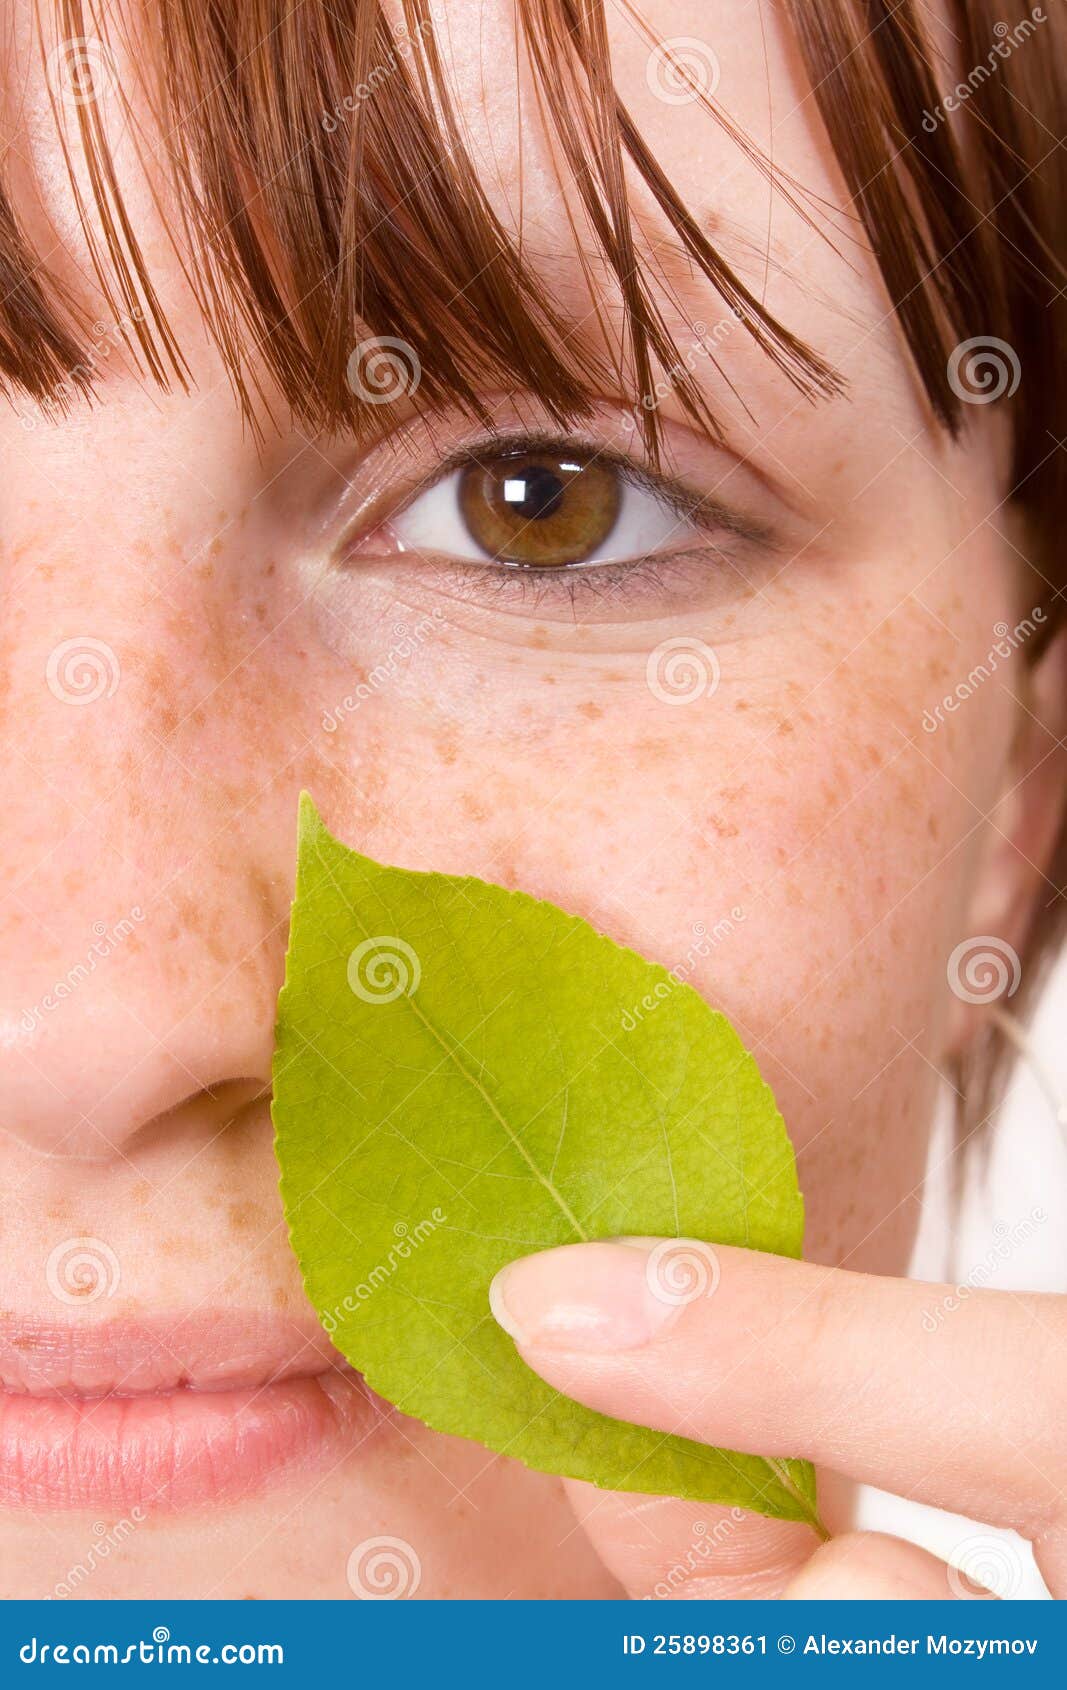 Естественная красотка. Девушка с листьями завода на стороне. Крупный план